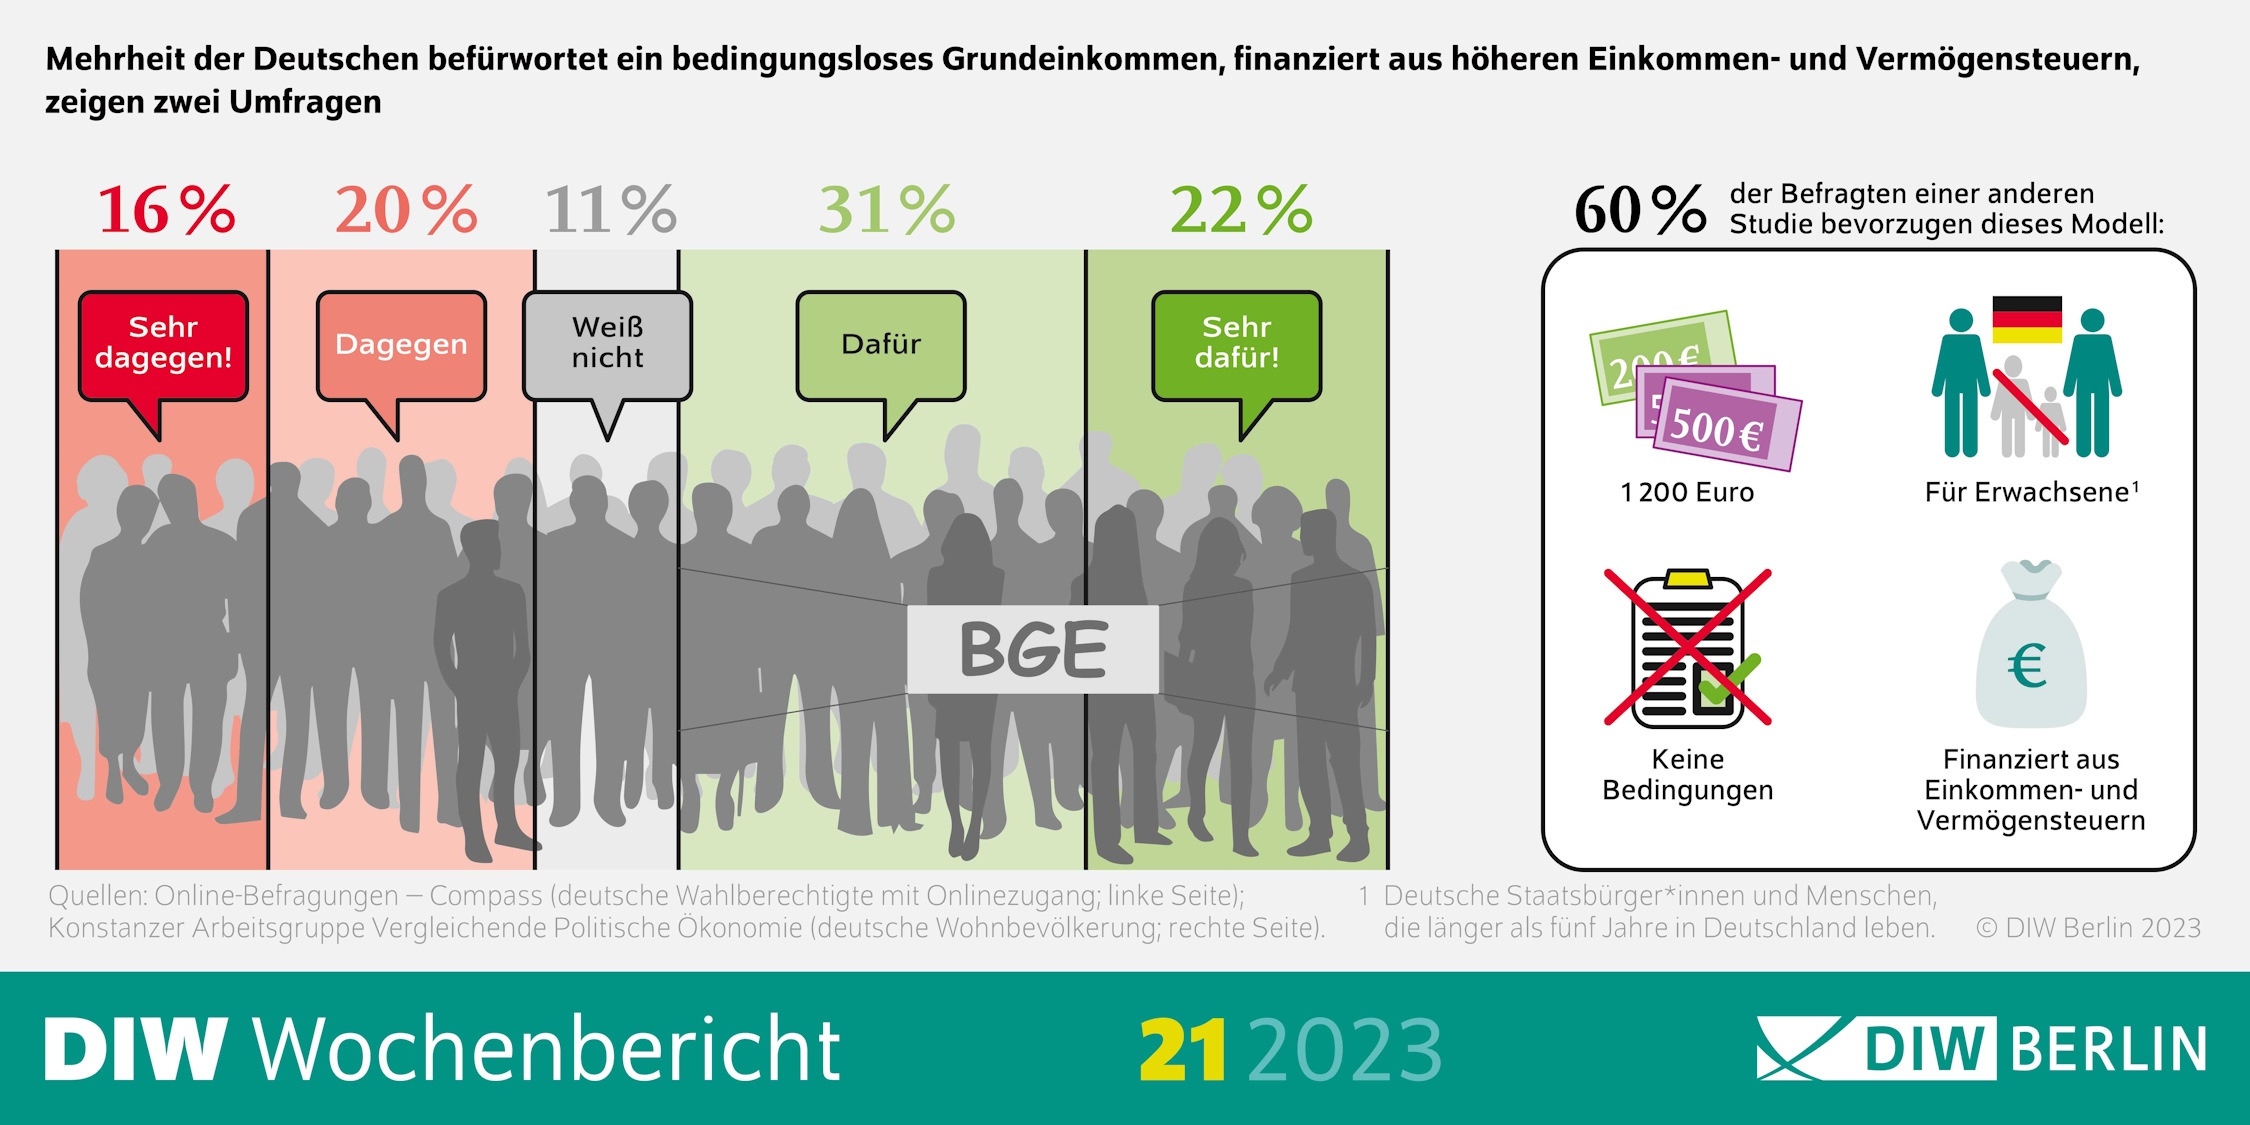 Die Mehrheit der Deutschen befürwortet das bedingungslose Grundeinkommen. Grafik: DIW